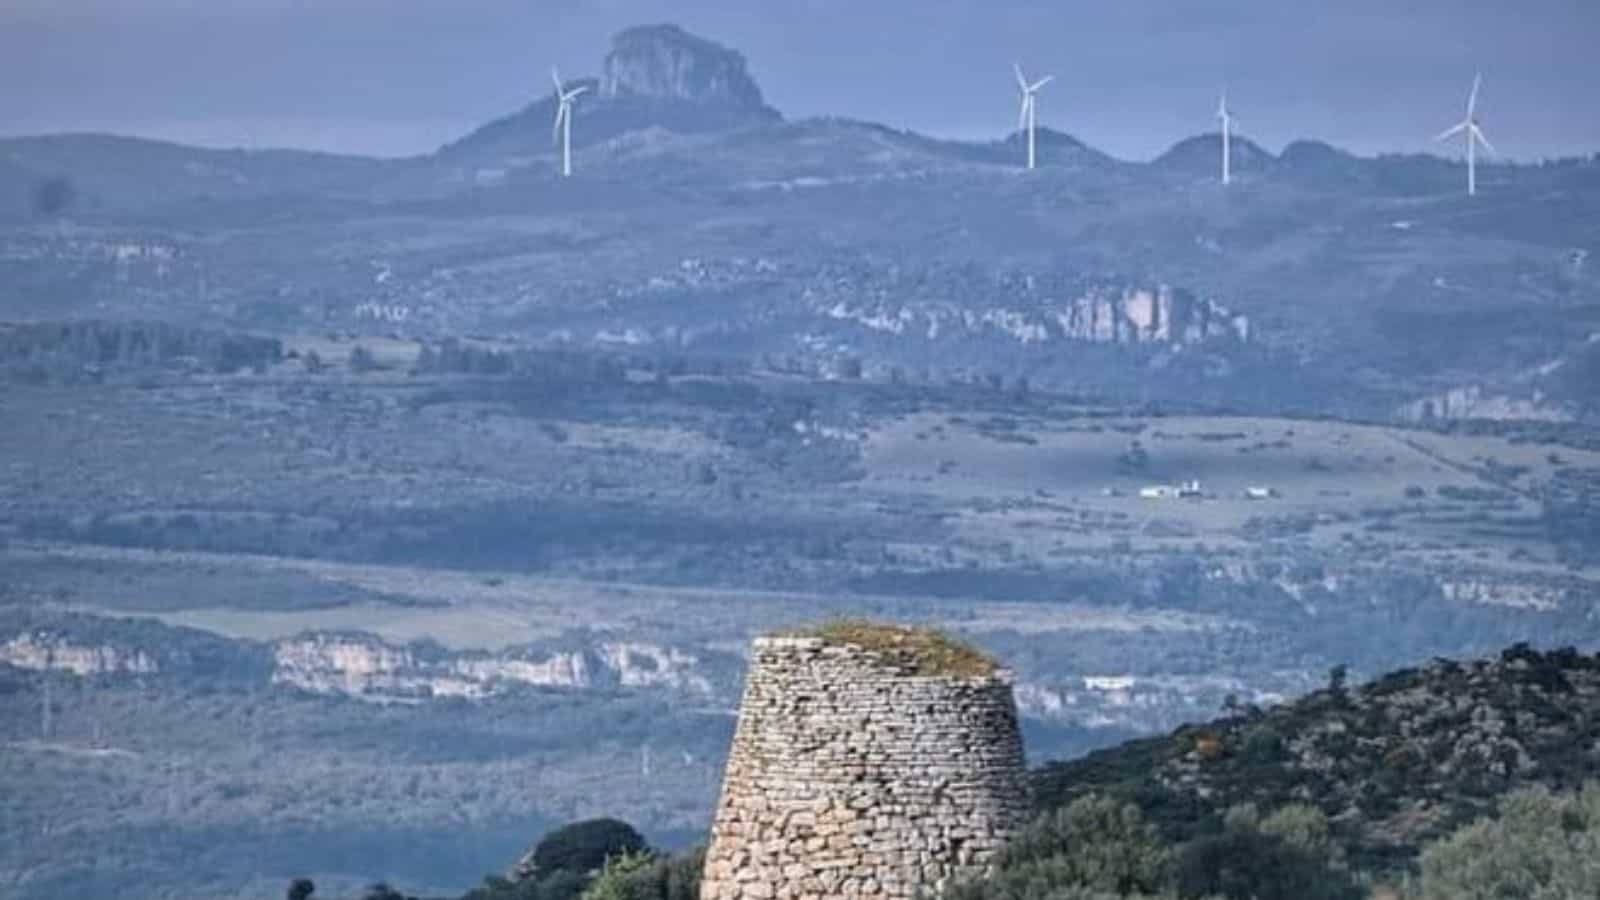 Impianti eolici: la moratoria della Sardegna incostituzionale, cambia lo scenario